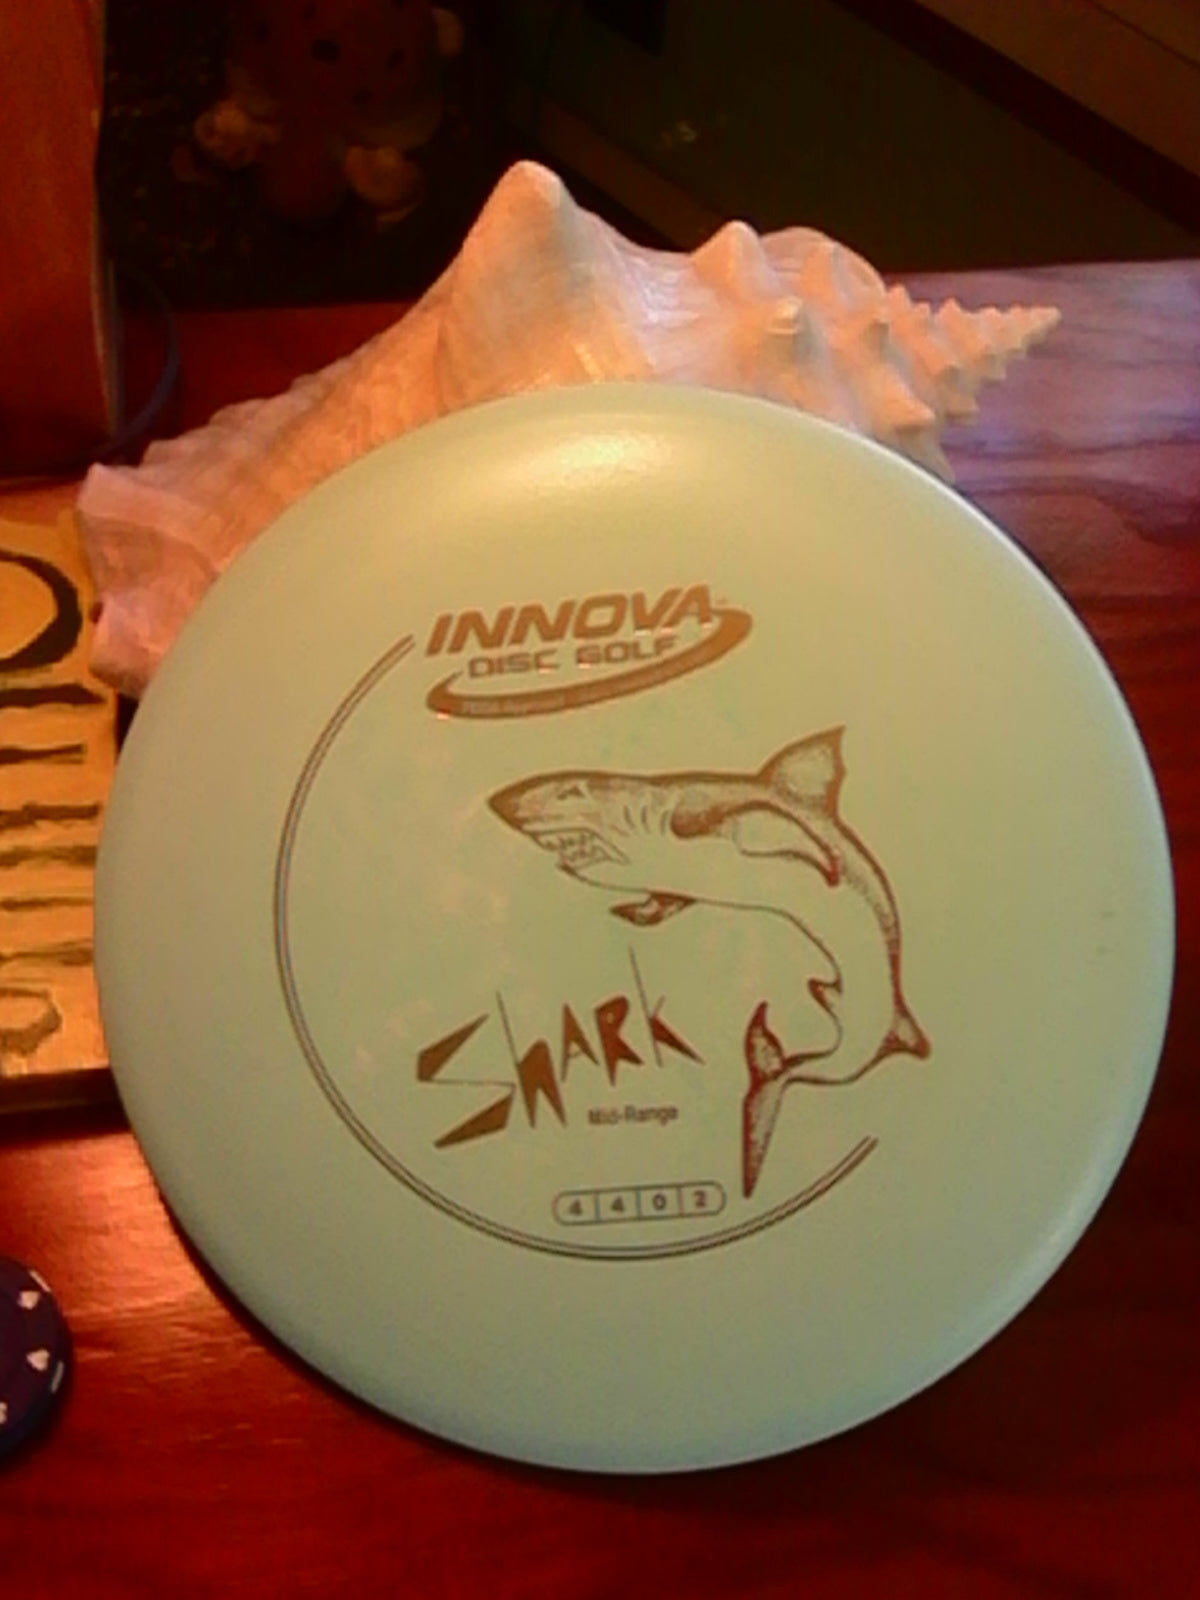 Innova DX Shark 148 Grams.